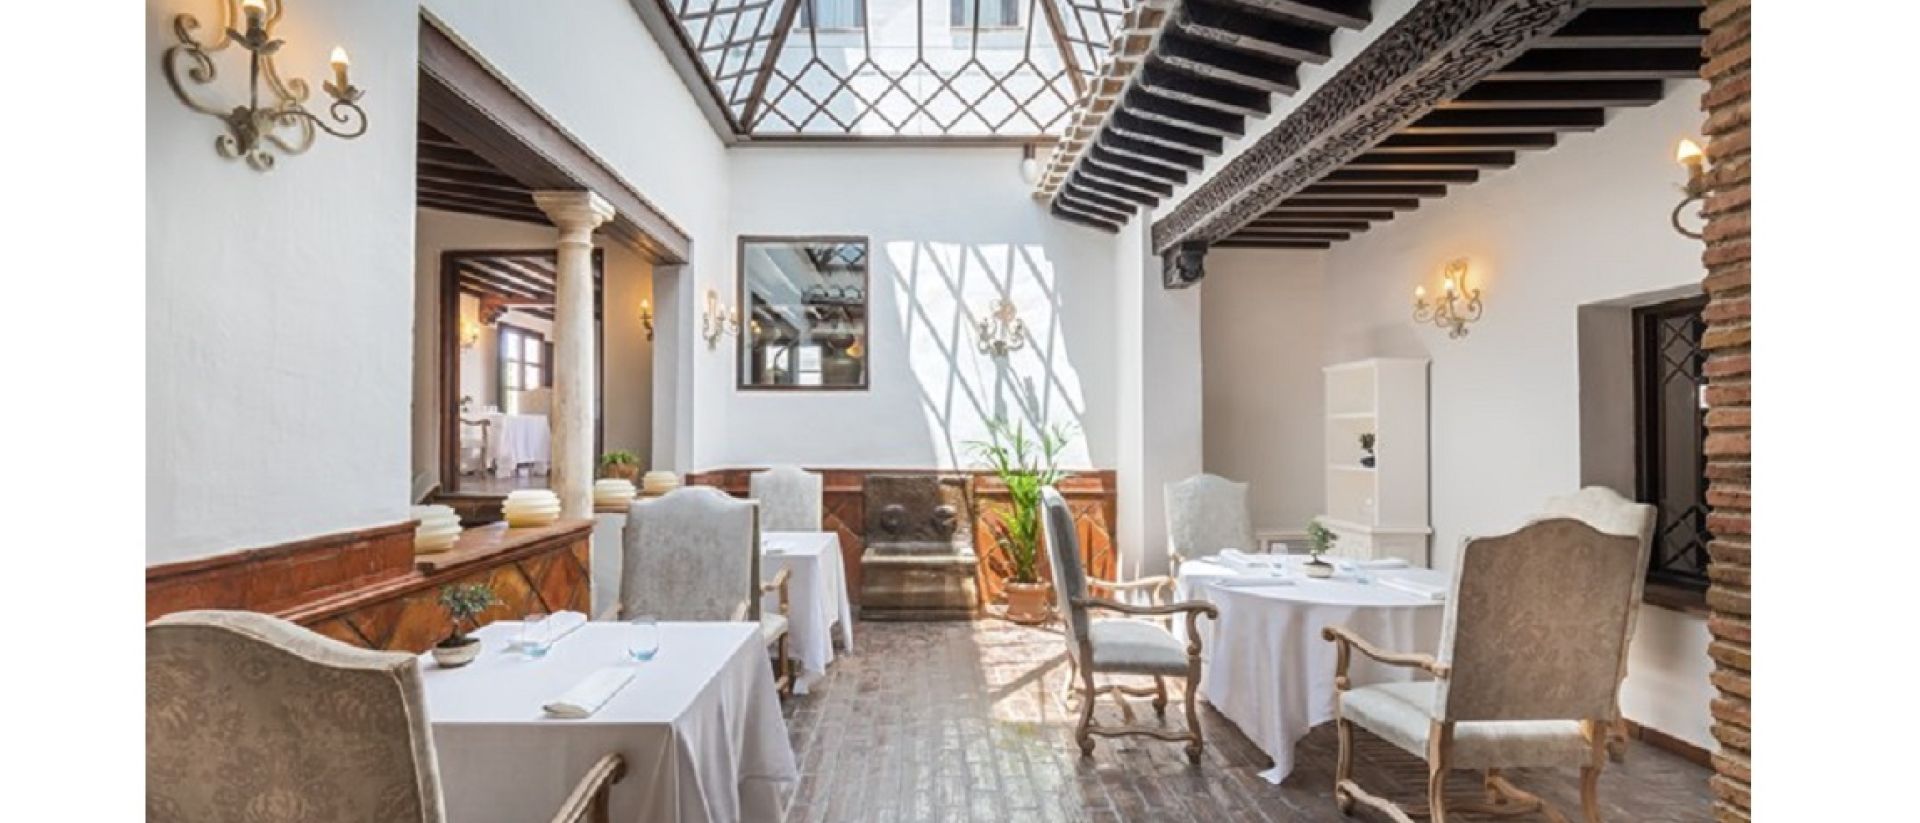 Barceló Hotel Group avança para uma gastronomia mais sustentável